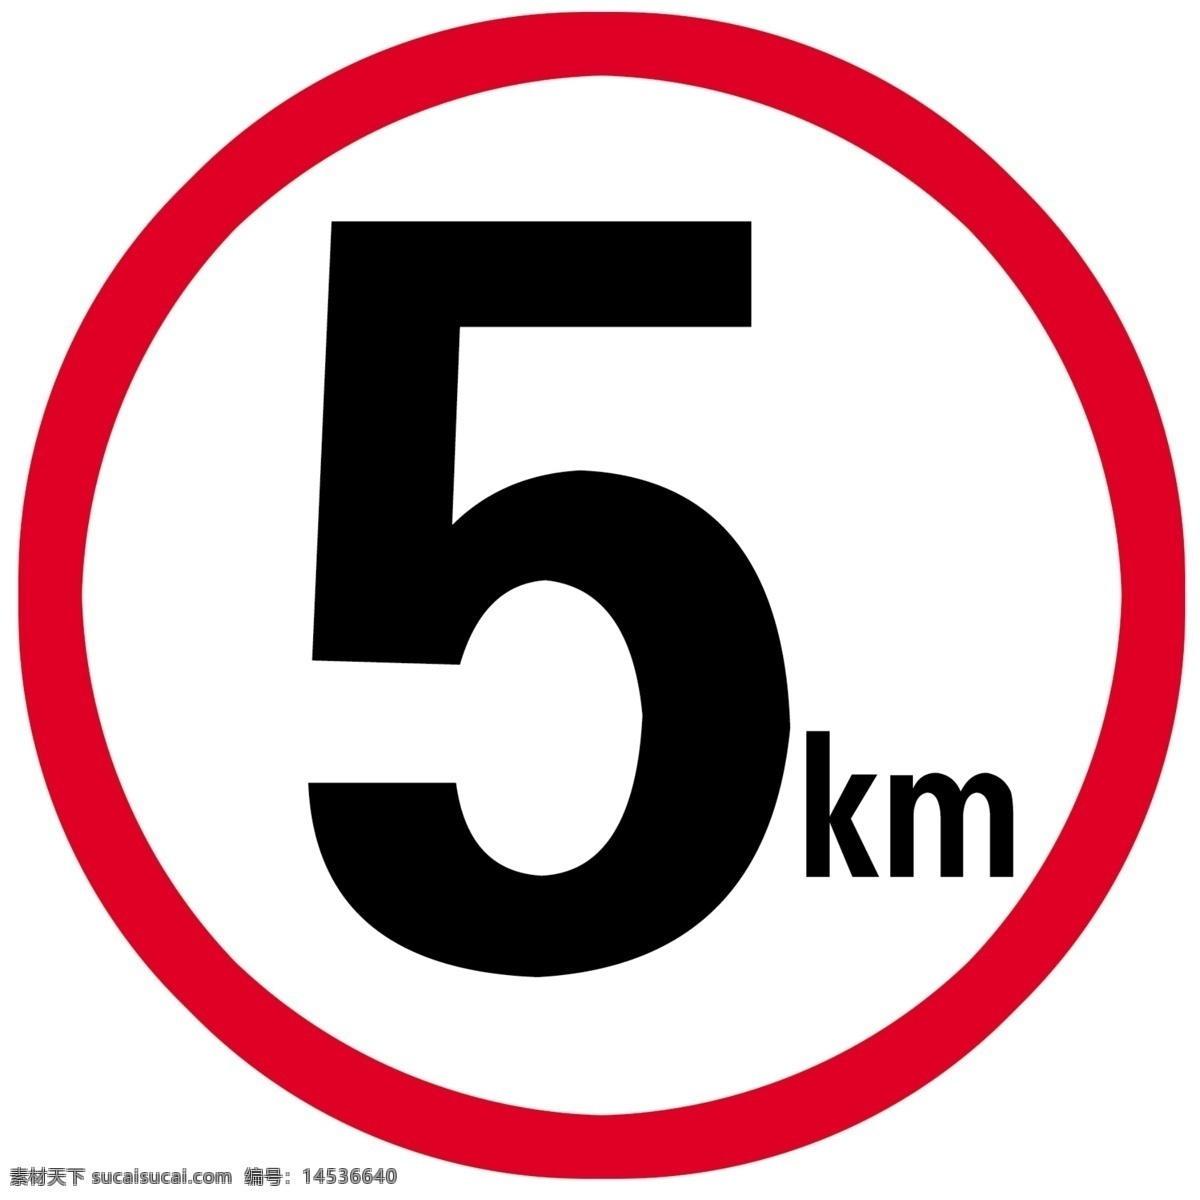 限速 5km 限速5公里 5公里 公路 车速 标志图标 公共标识标志